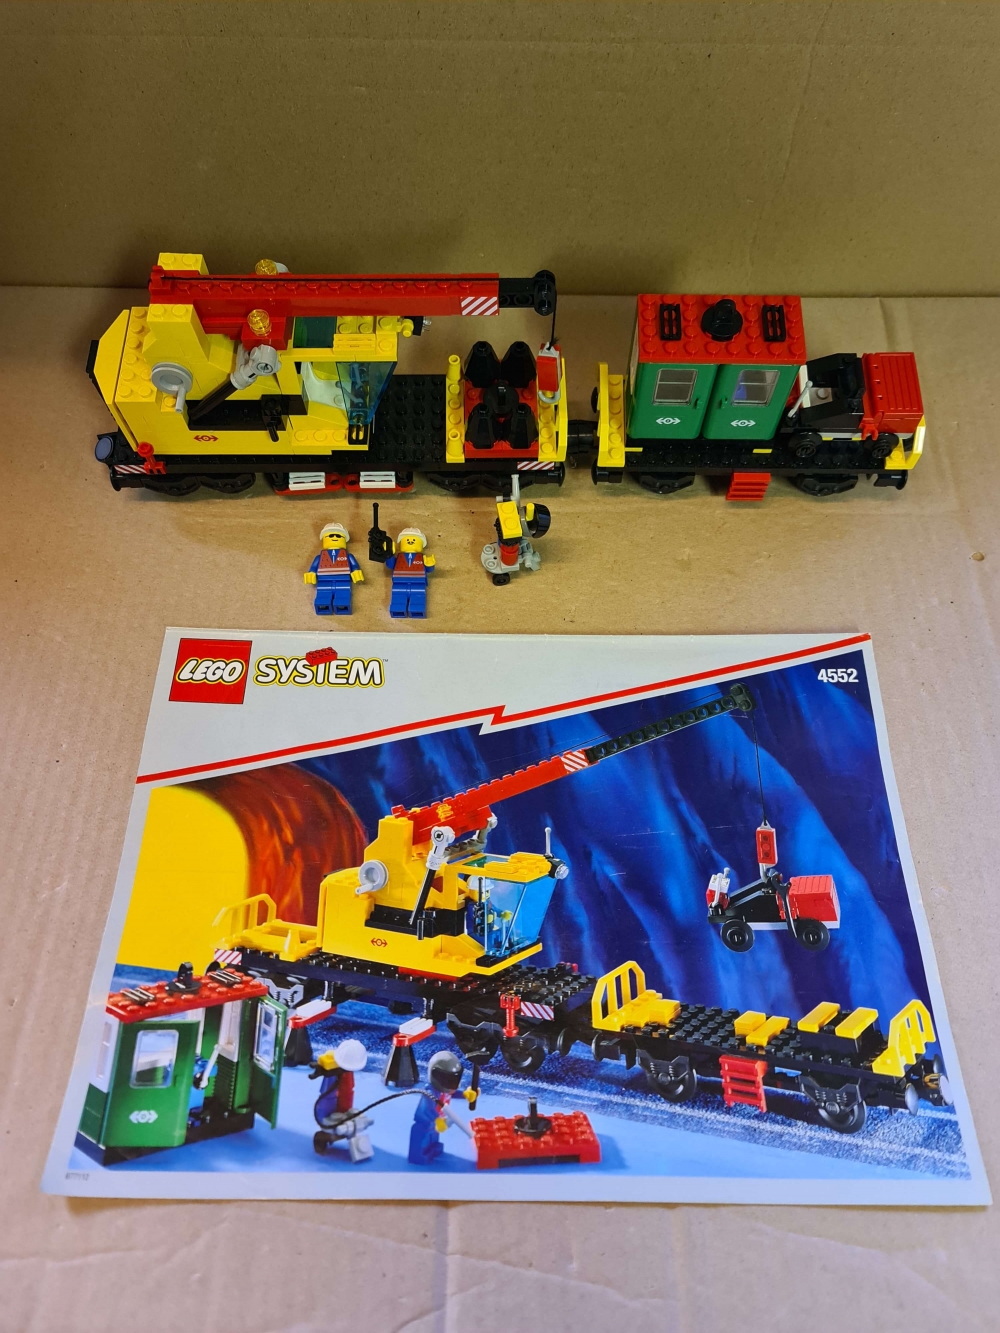 Sett 4552 fra Lego Train : 9V serien
Nydelig sett. 
Komplett med manual og alle klistremerker.